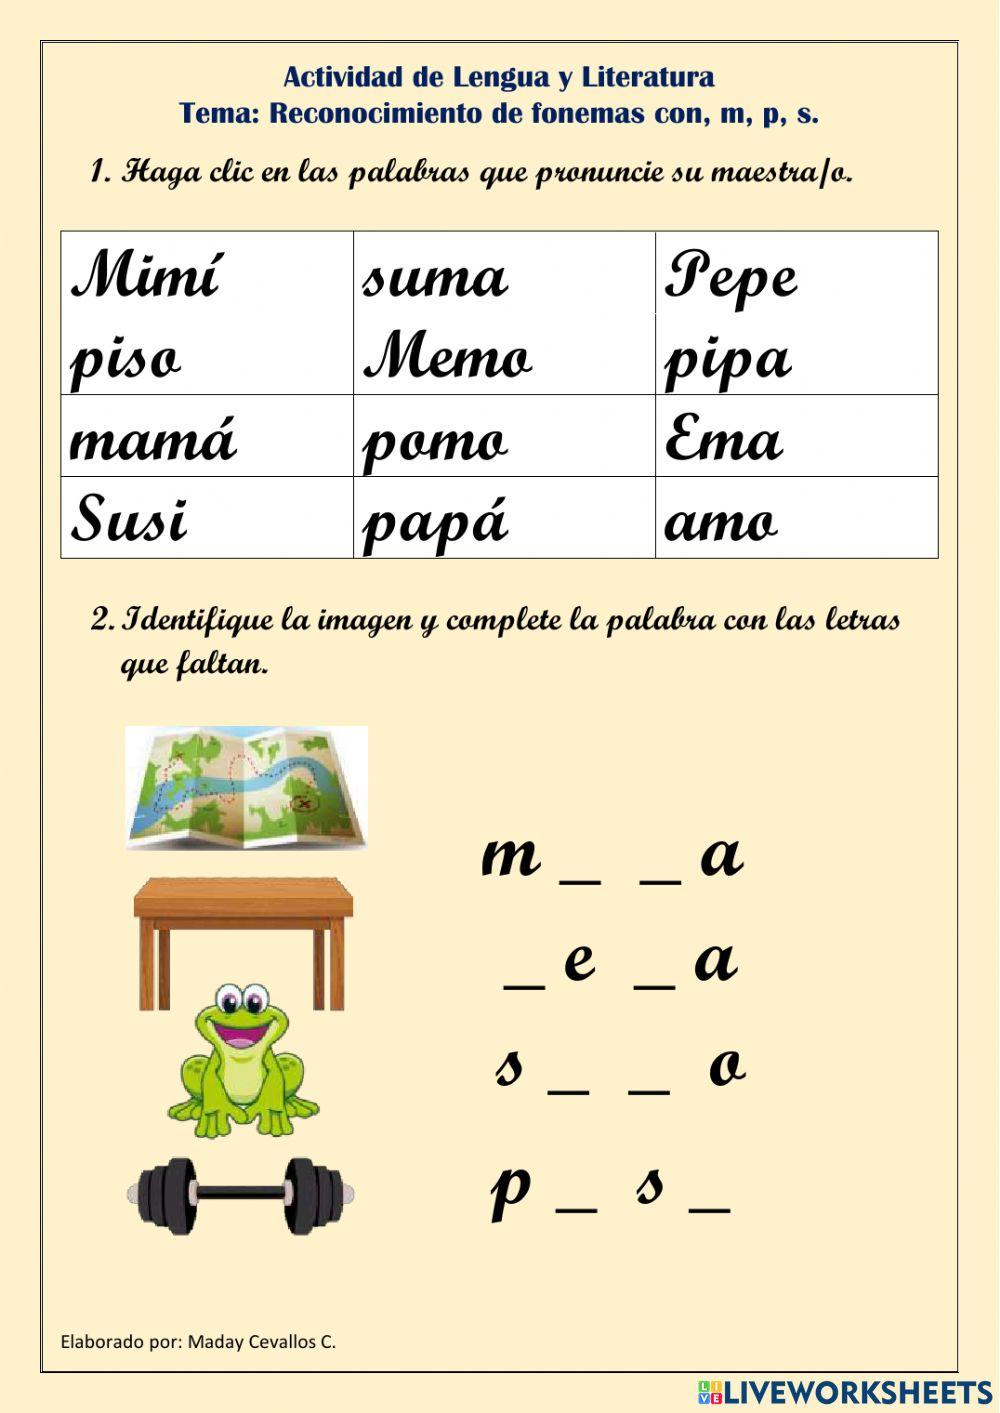 Reconocimiento de fonemas con, m, p, s.